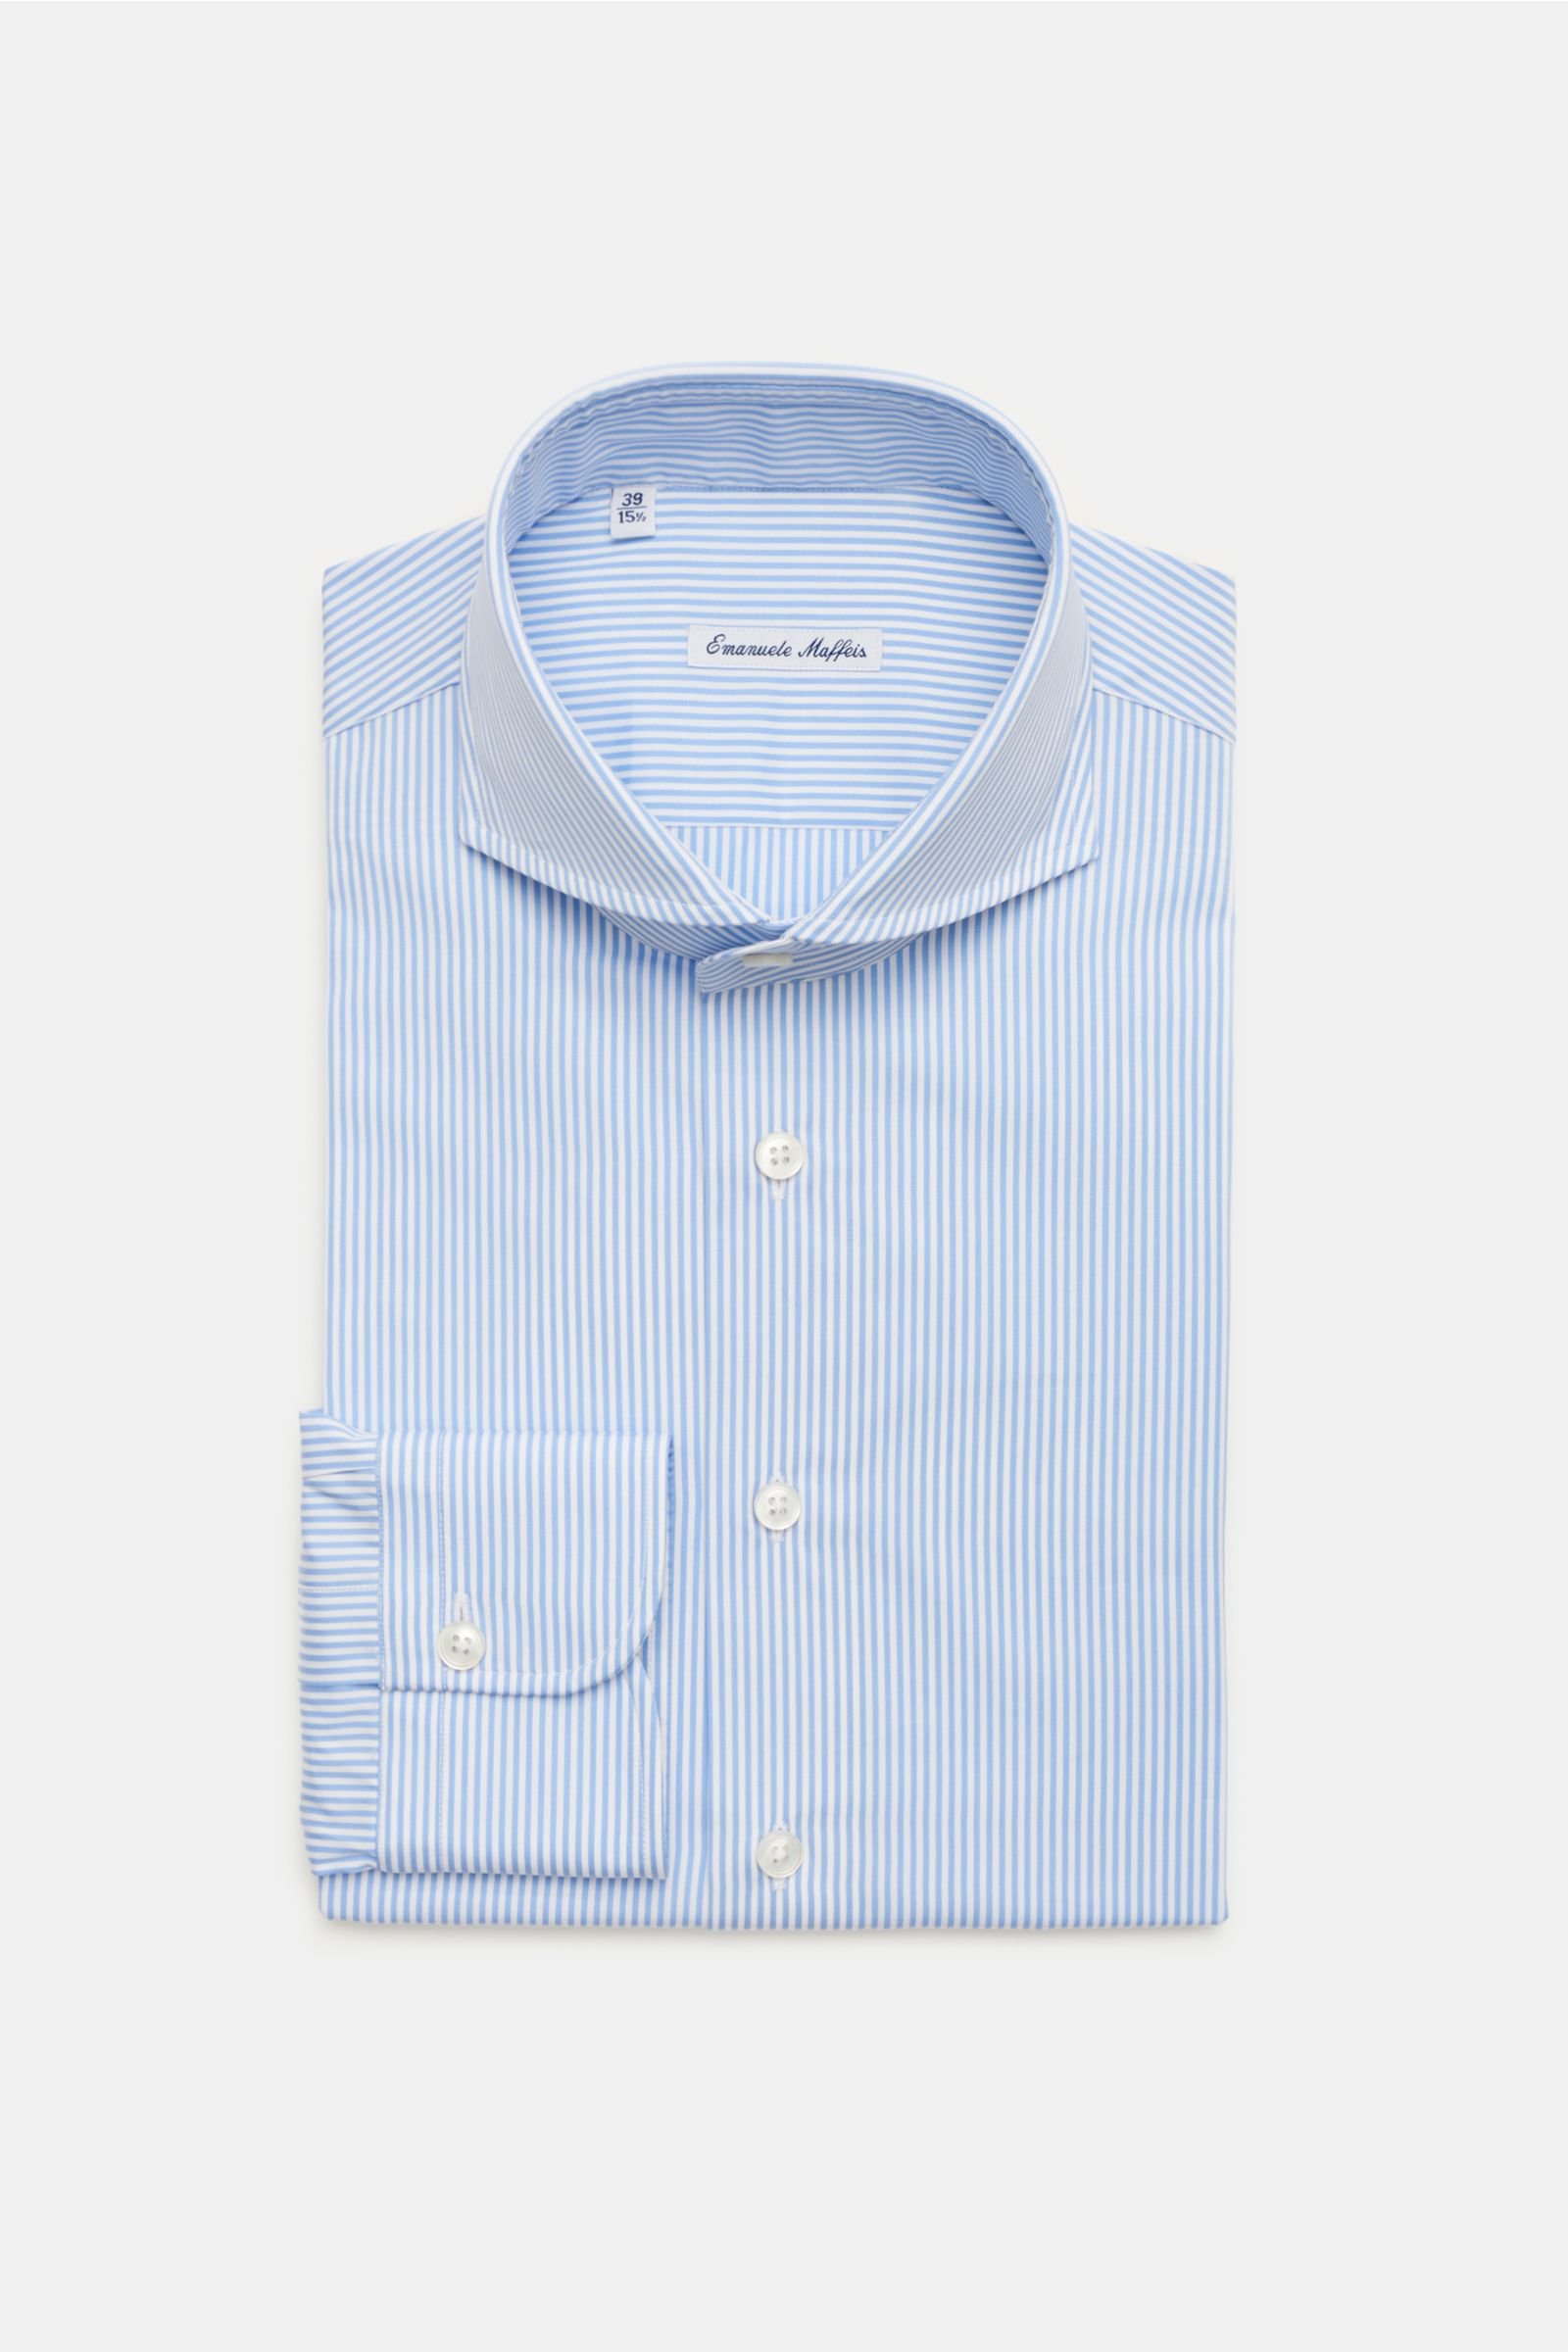 Business shirt 'Dora' shark collar smoky blue/white striped